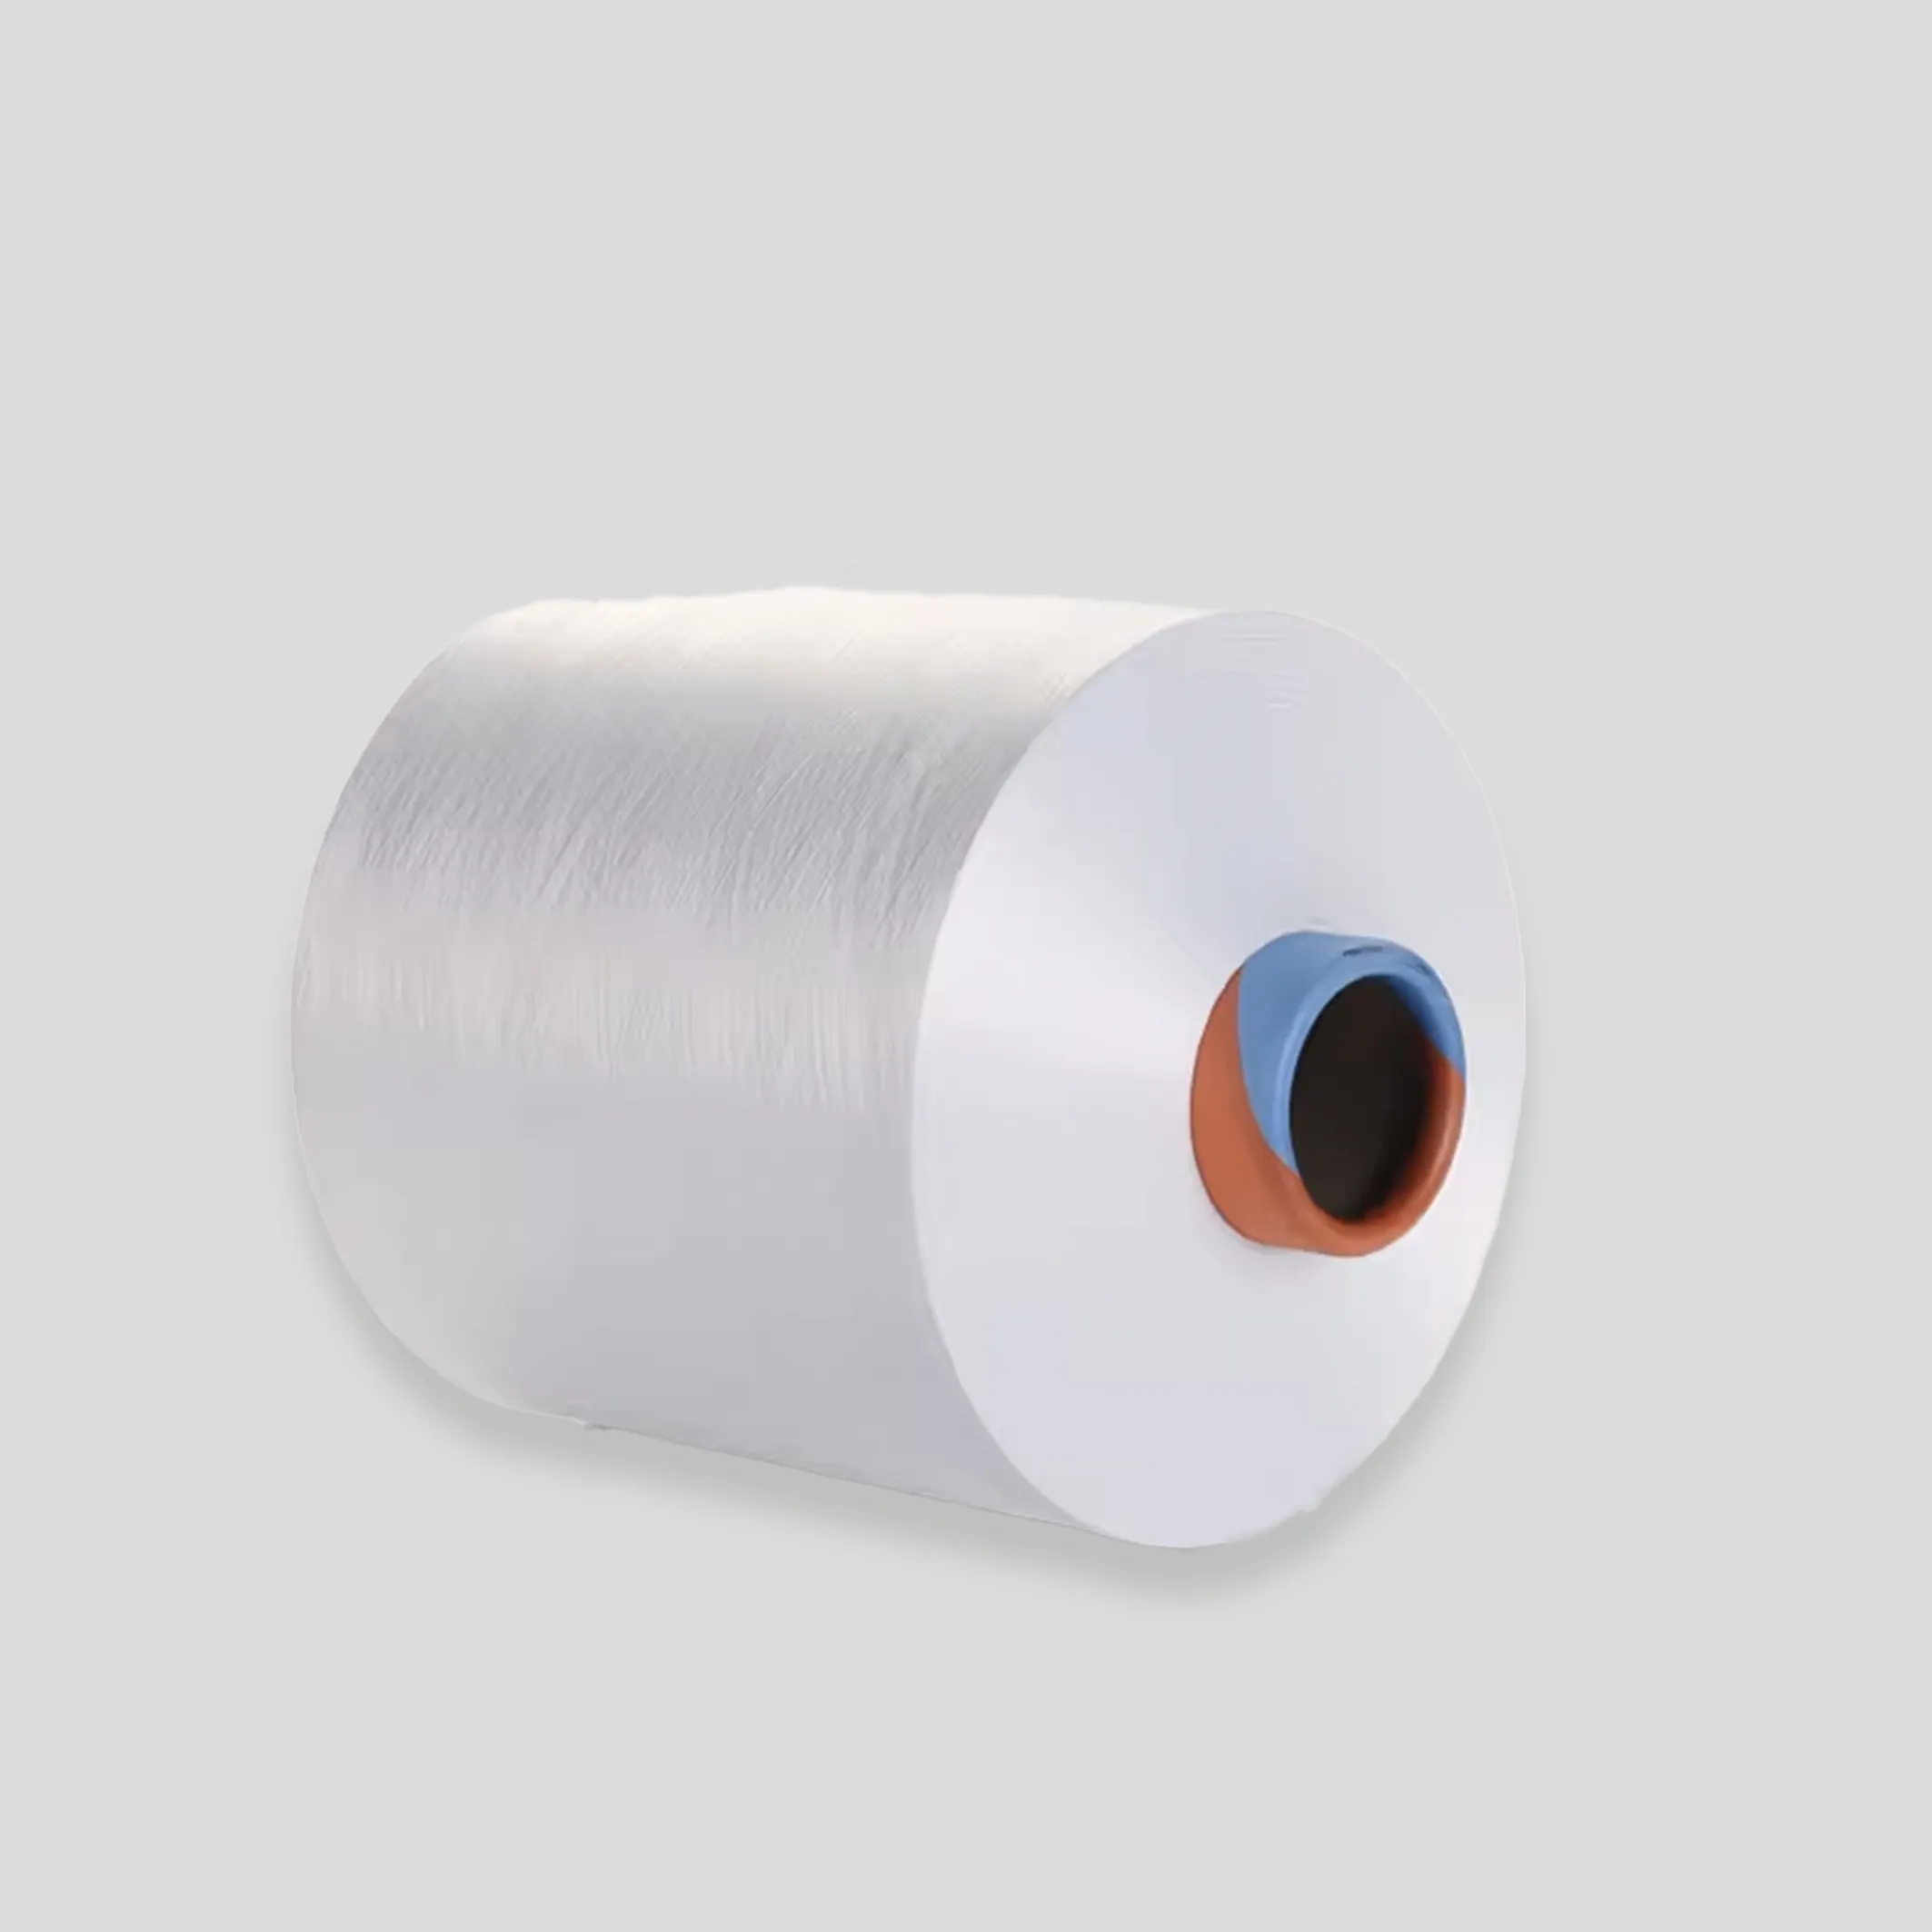 100% Poliéster reciclado DTY Hilo de alta entremezcla 75D/36F Color blanco Tejido y tejido Hilo de filamento de alta tenacidad"